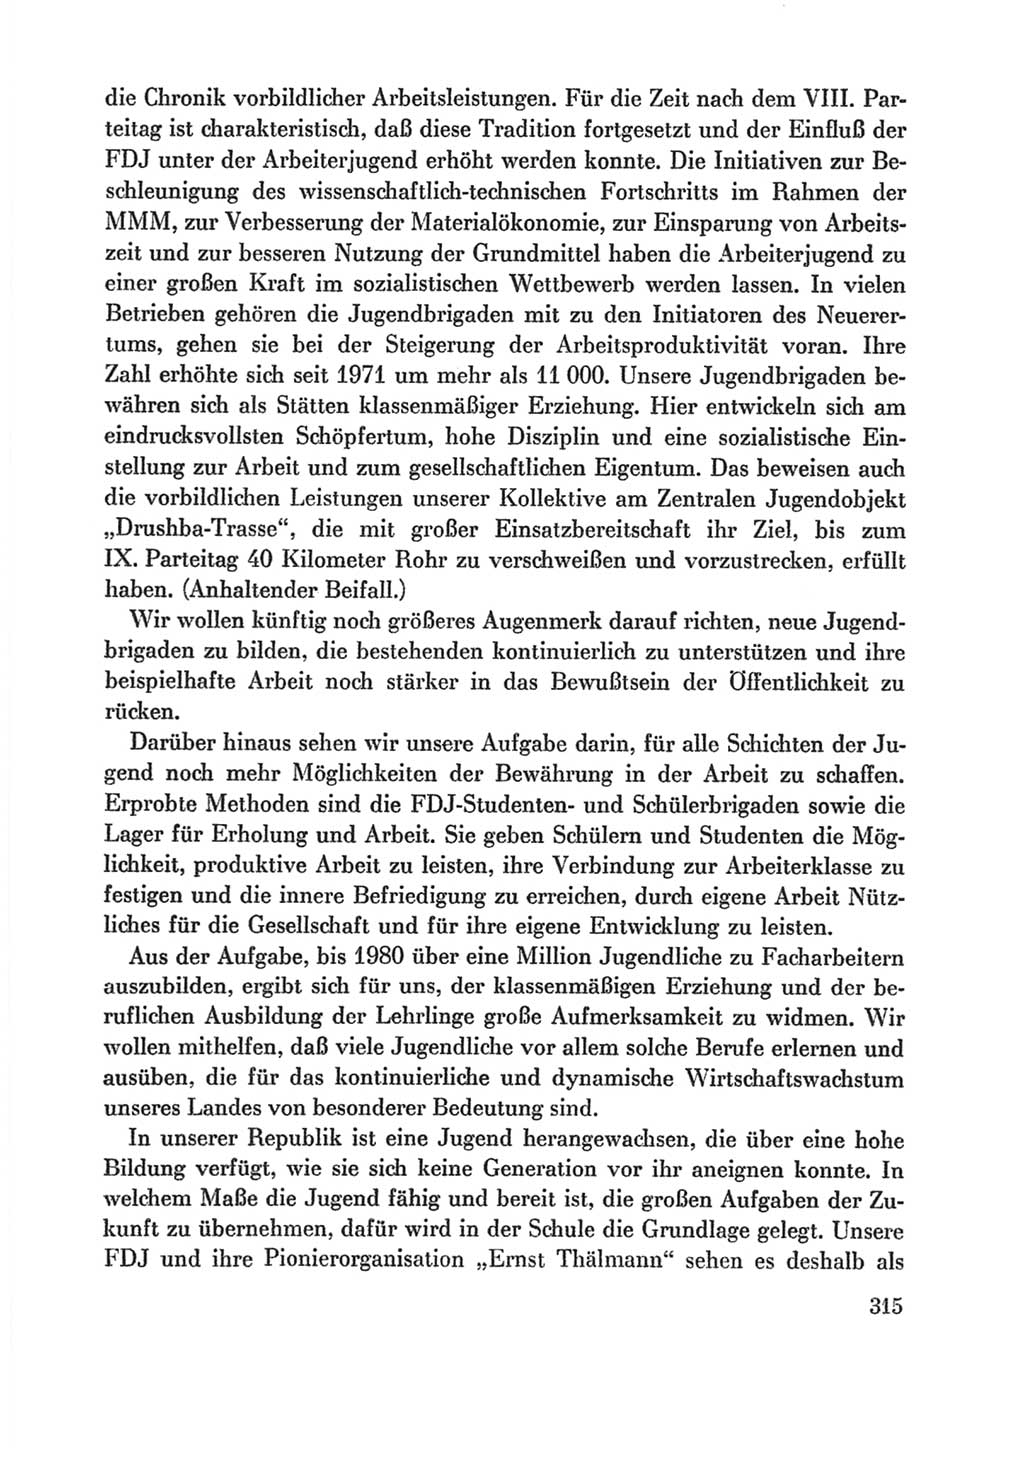 Protokoll der Verhandlungen des Ⅸ. Parteitages der Sozialistischen Einheitspartei Deutschlands (SED) [Deutsche Demokratische Republik (DDR)] 1976, Band 1, Seite 315 (Prot. Verh. Ⅸ. PT SED DDR 1976, Bd. 1, S. 315)